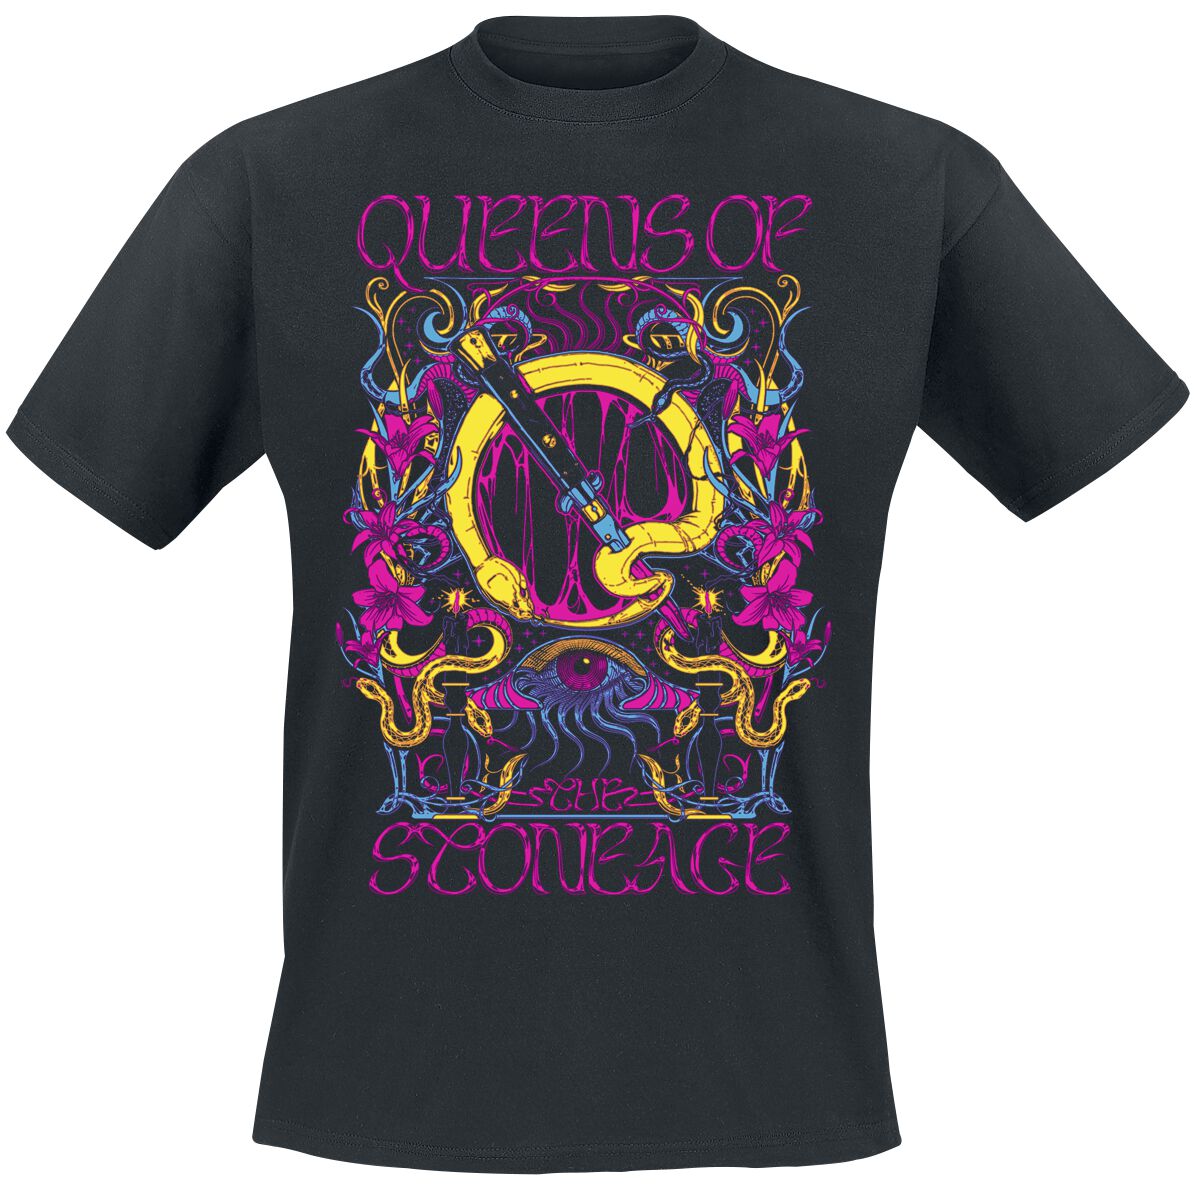 Queens Of The Stone Age T-Shirt - In Times New Roman - Neon Sacrilege - S bis 3XL - für Männer - Größe 3XL - schwarz  - Lizenziertes Merchandise!